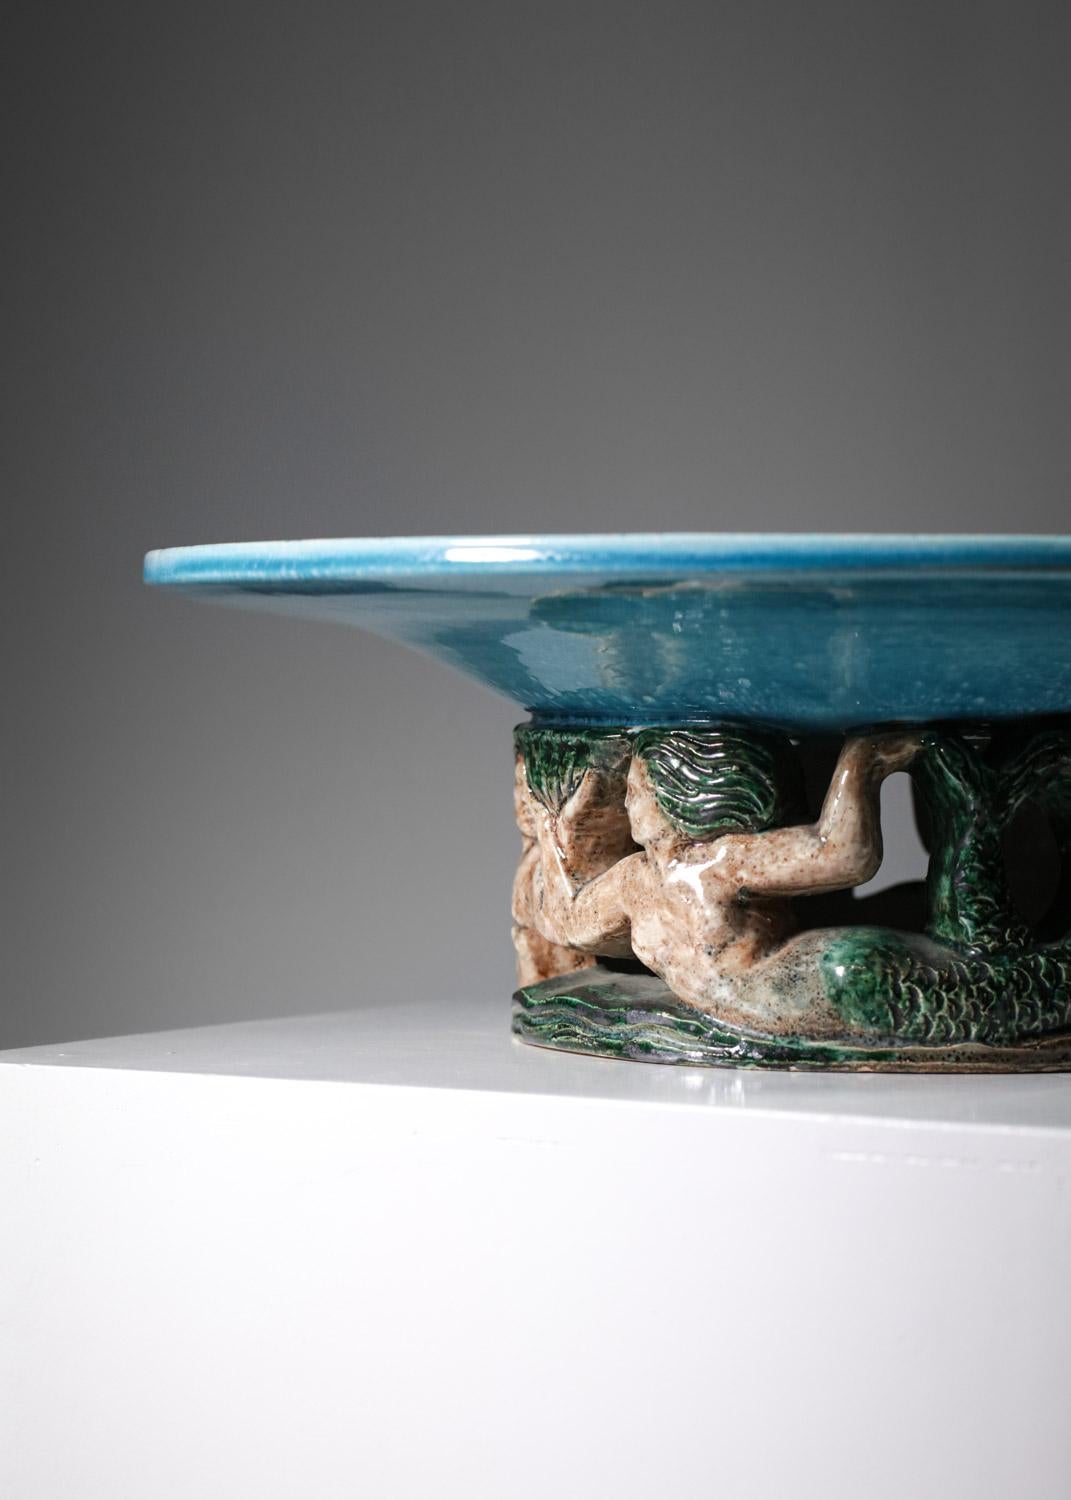 Große Art-déco-Keramikschüssel aus den 30/40er Jahren, hergestellt von dem französischen Keramiker Robert Meynard. Sehr schönes Detail der Basis mit den Zeichen der durchbrochenen Meerjungfrauen. Emaille in blauen, grünen und beigen Farbtönen. Sehr